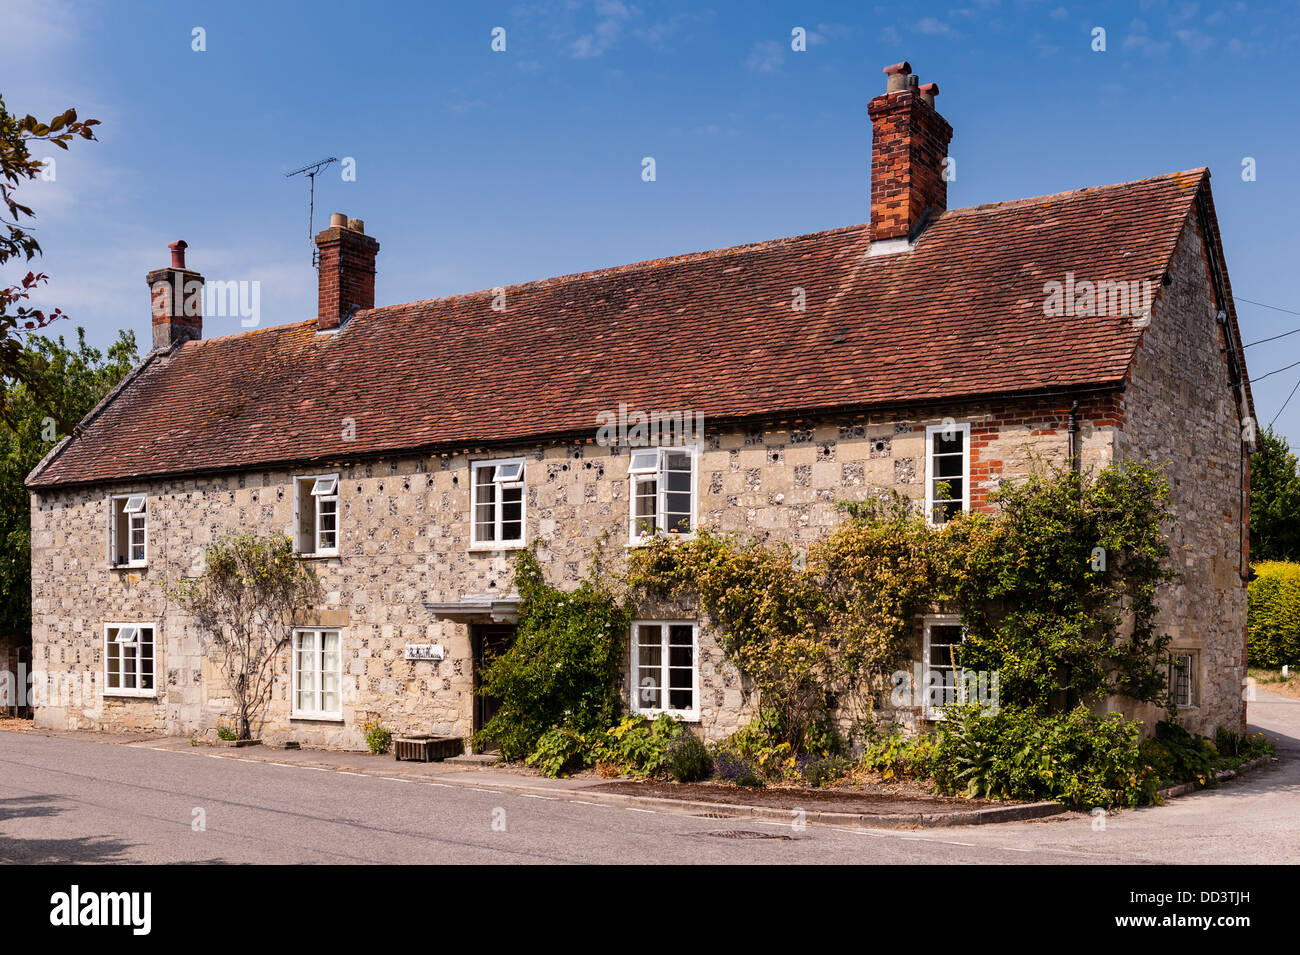 Ein Haus im Kirchturm Langford, Wiltshire, England, Großbritannien, Uk Stockfoto